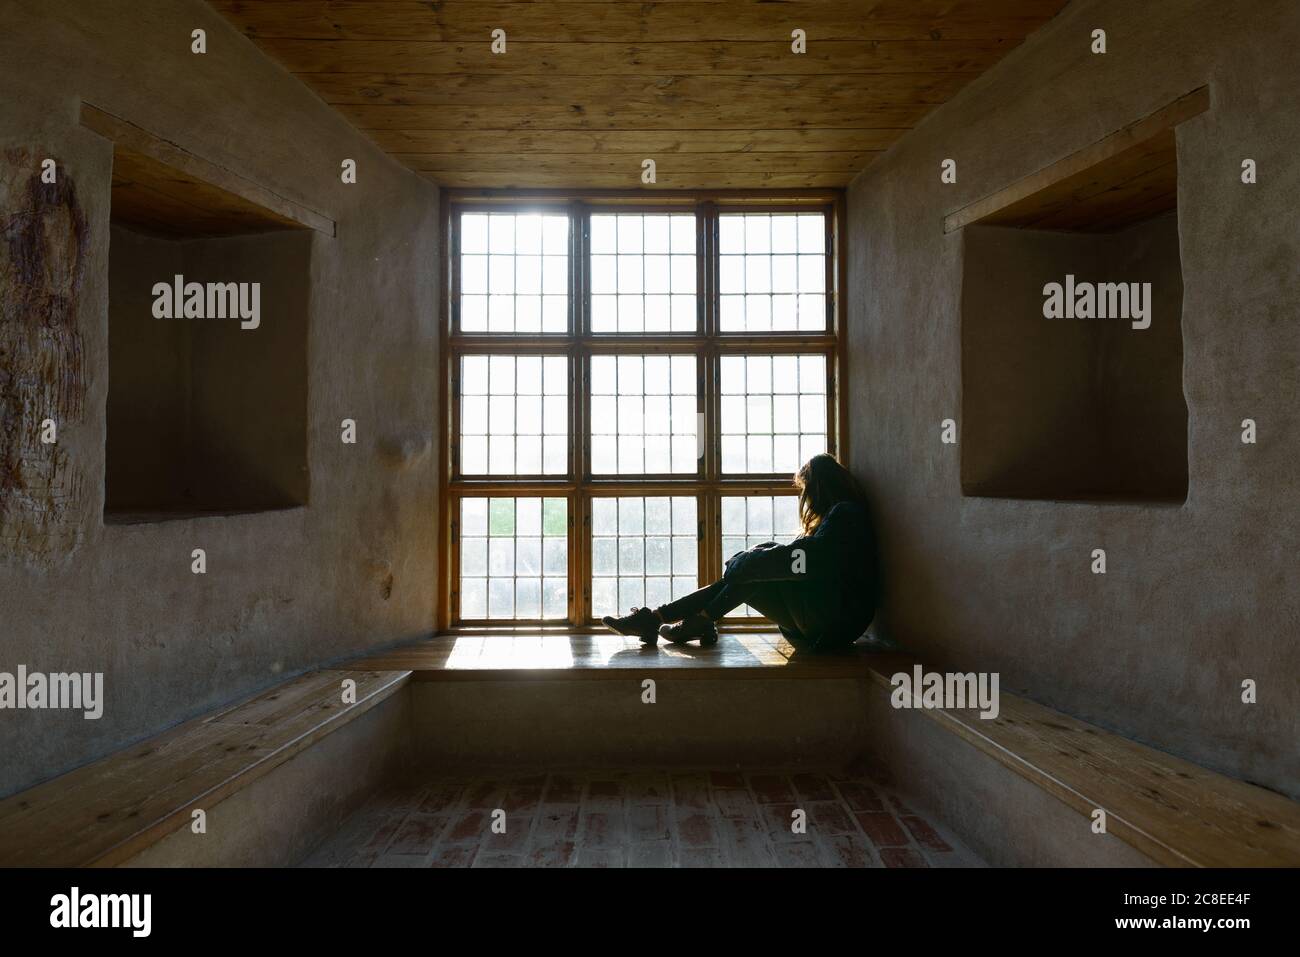 Junge Frau, die vor einem geschlossenen Holzfenster sitzt und das Sonnenlicht einströmt Stockfoto